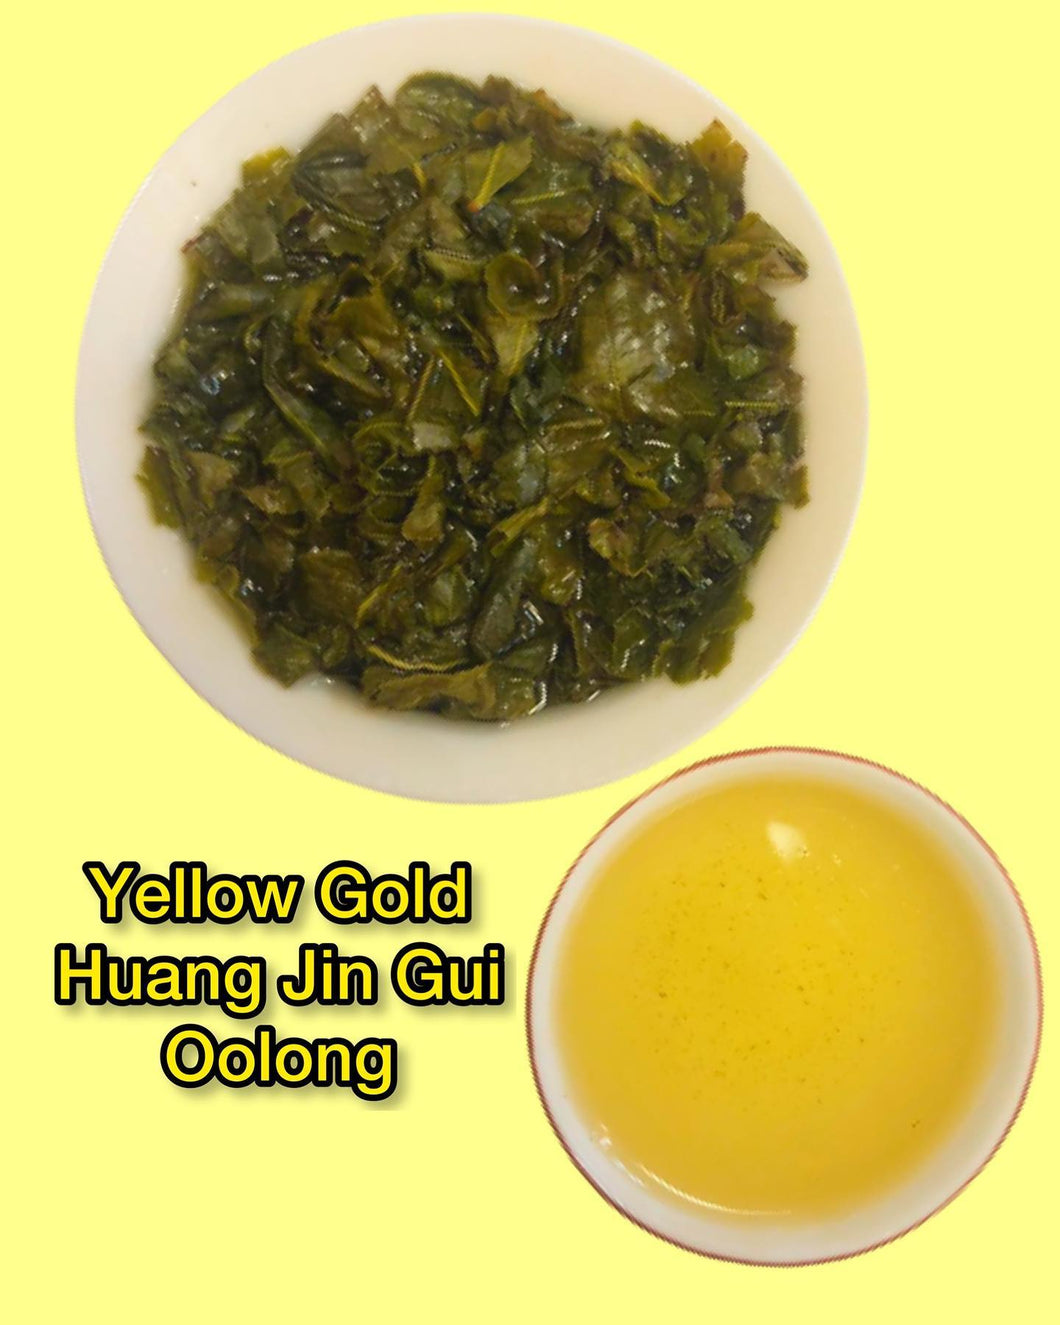 High Mountain Yellow Gold Huang Jin Gui Oolong